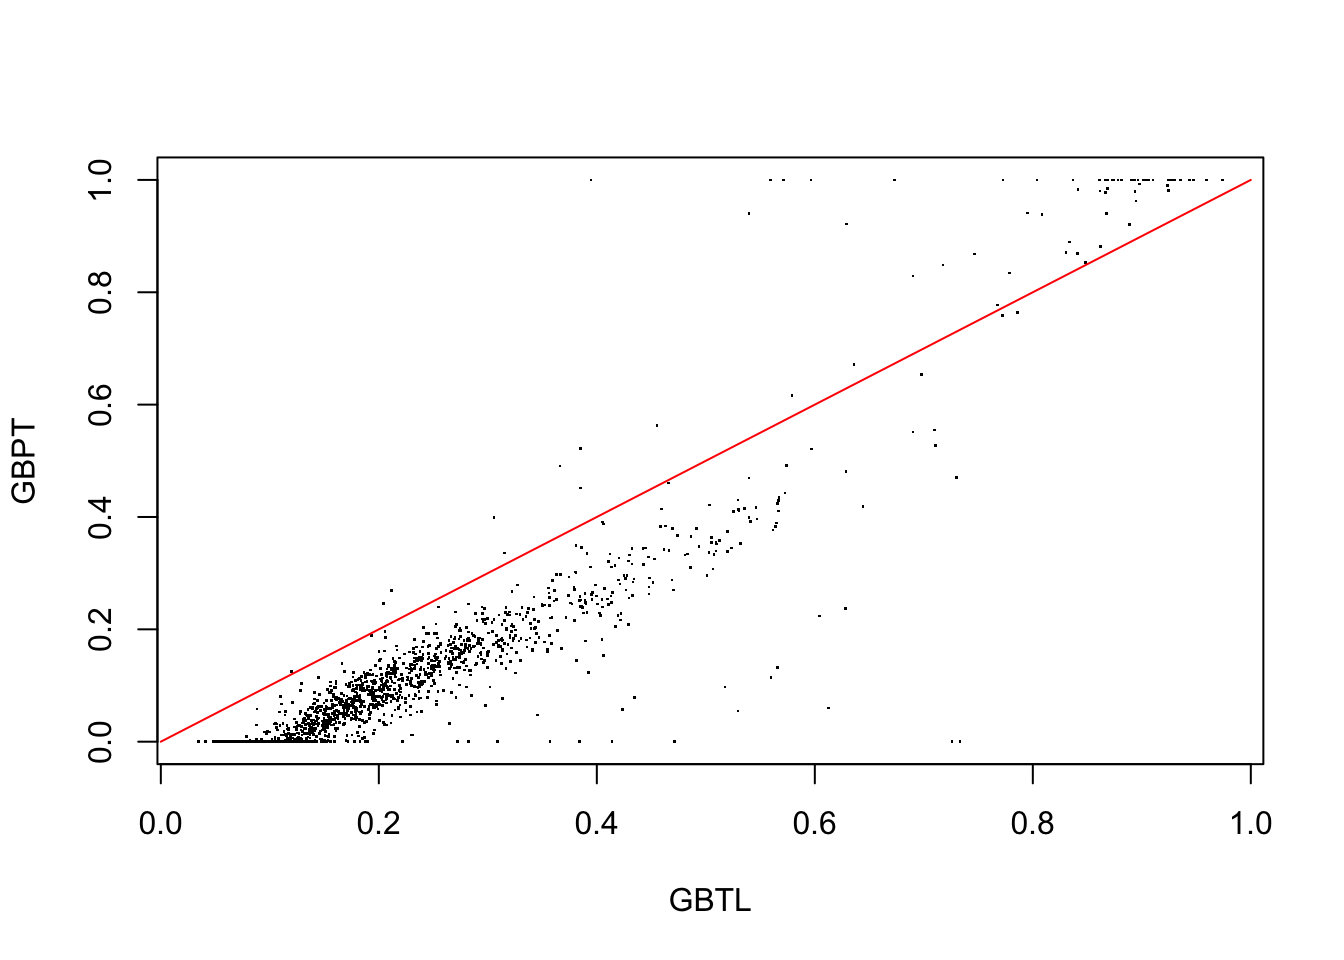 GBL vrsus GBP probability estimates for test data observations in region 7.